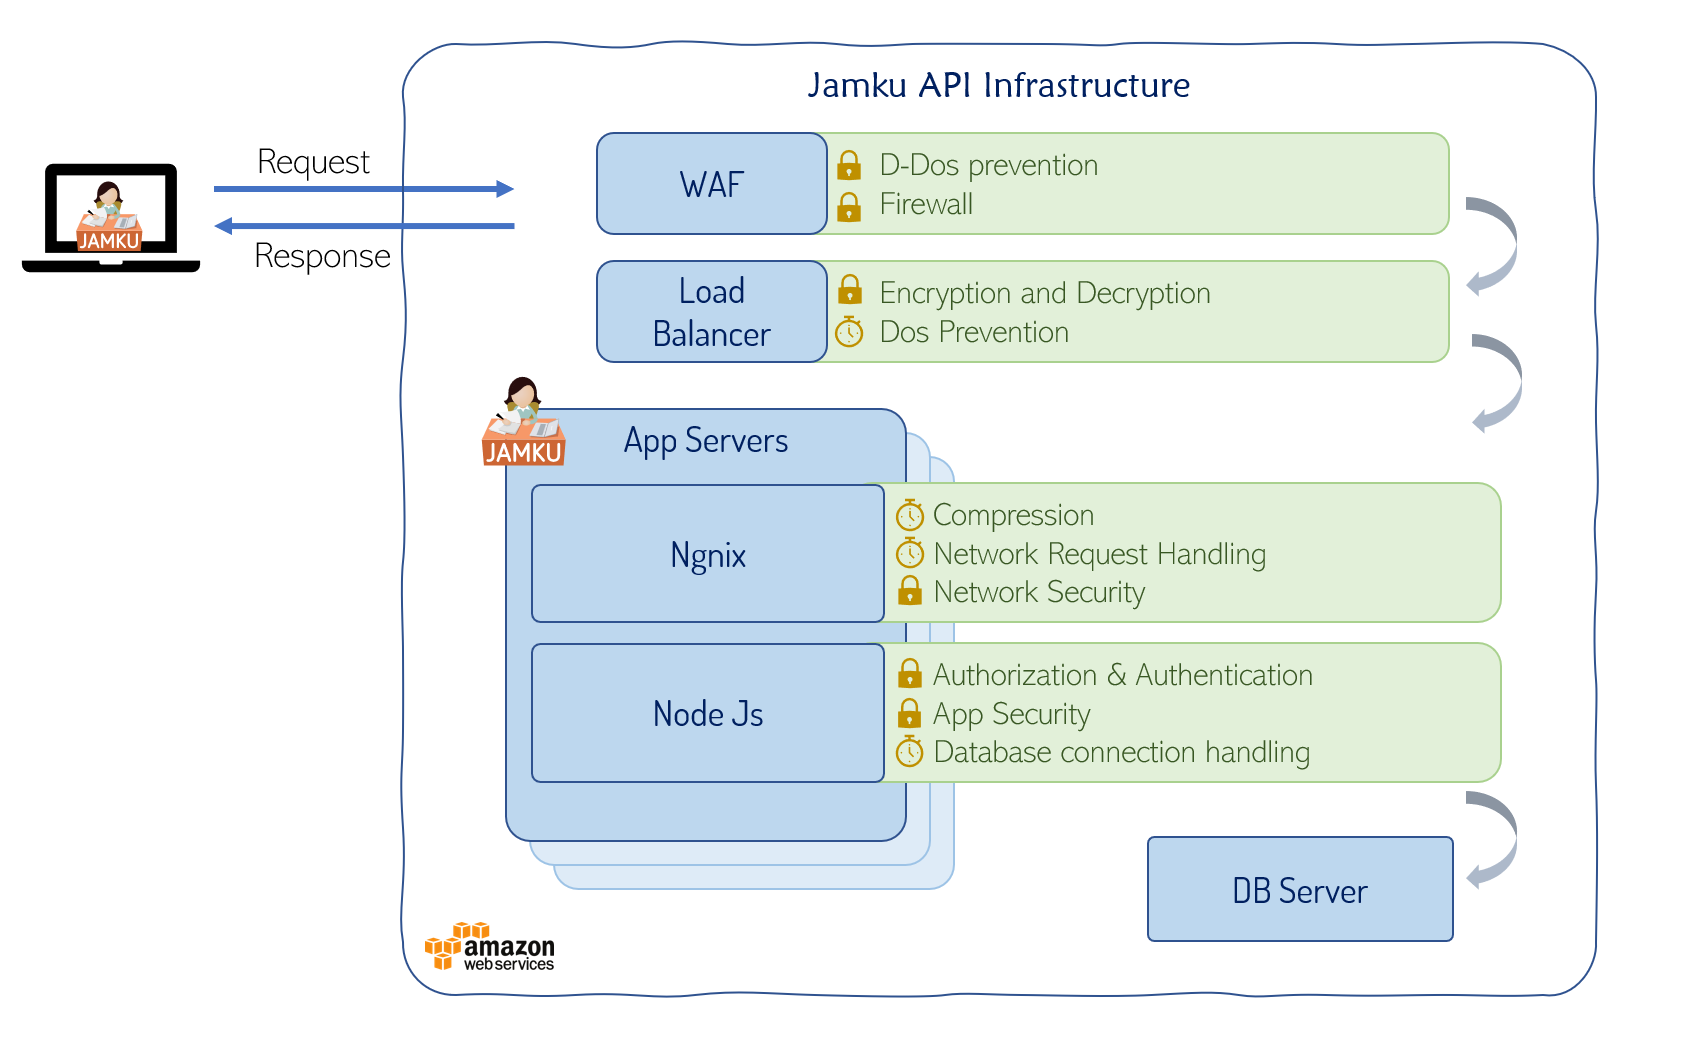 API Tech Stack of Jamku